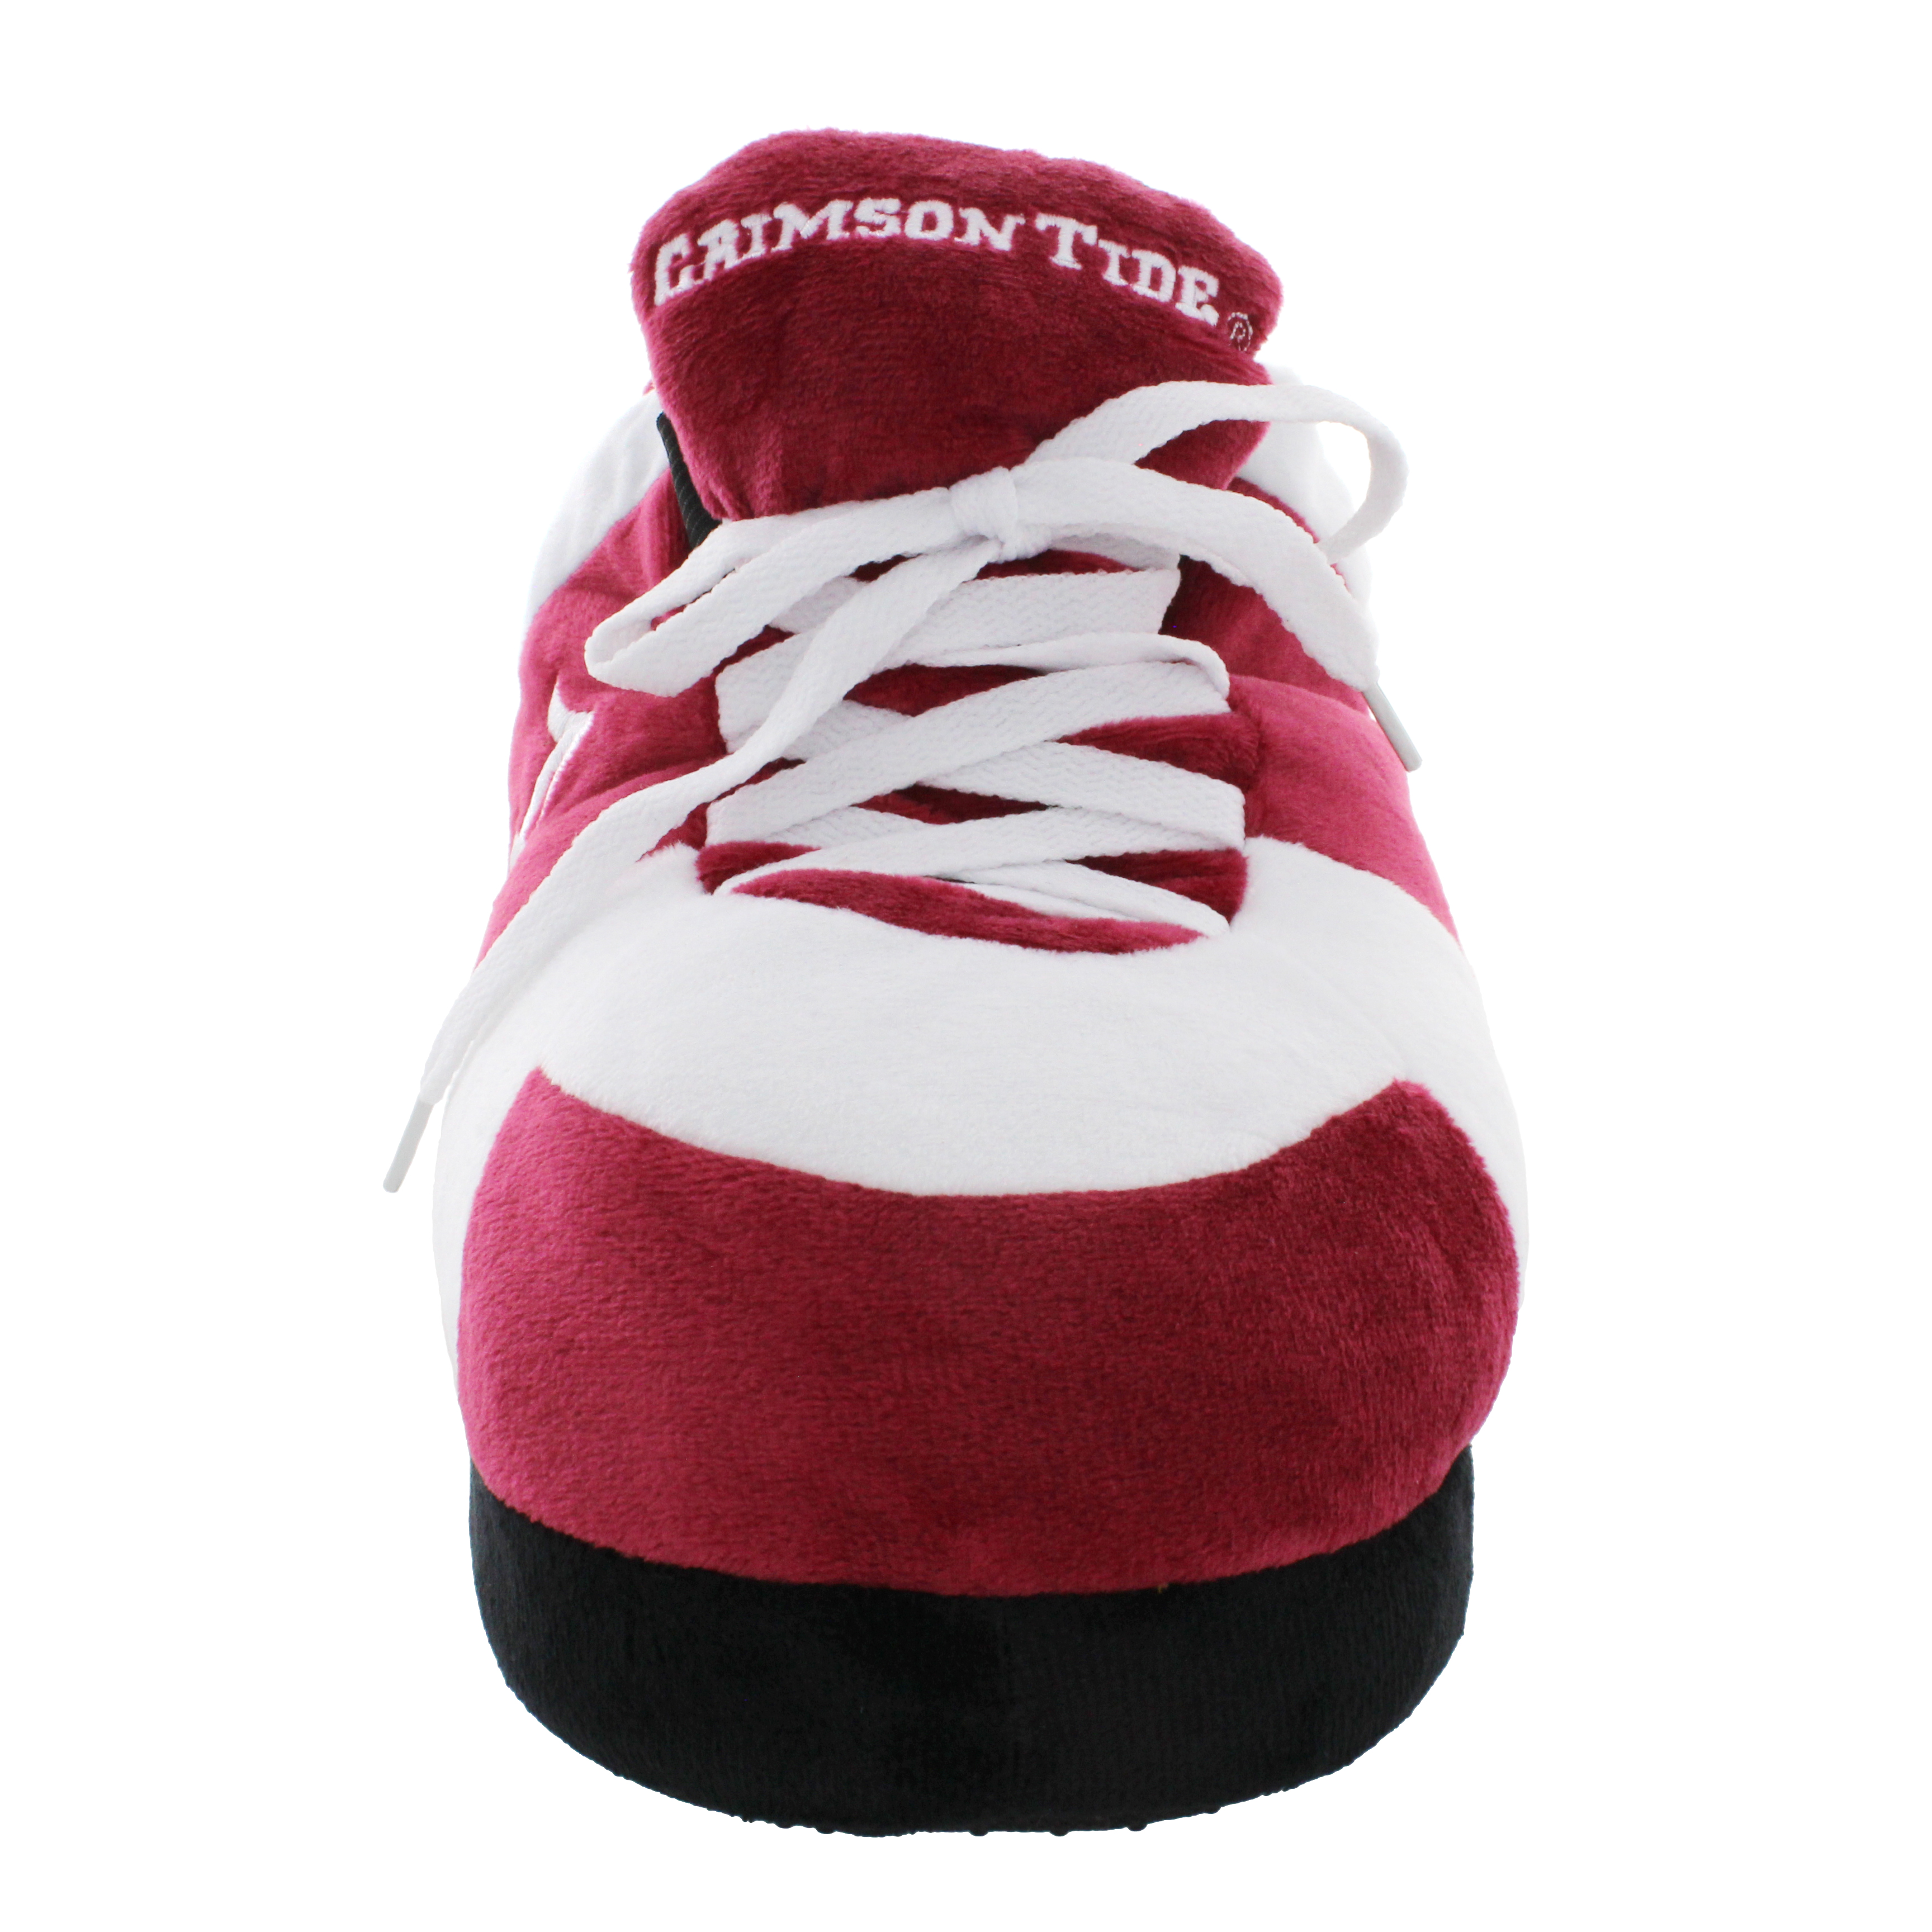 Alabama Crimson Tide Original Comfy Feet Sneaker Slipper, Large - image 5 of 8